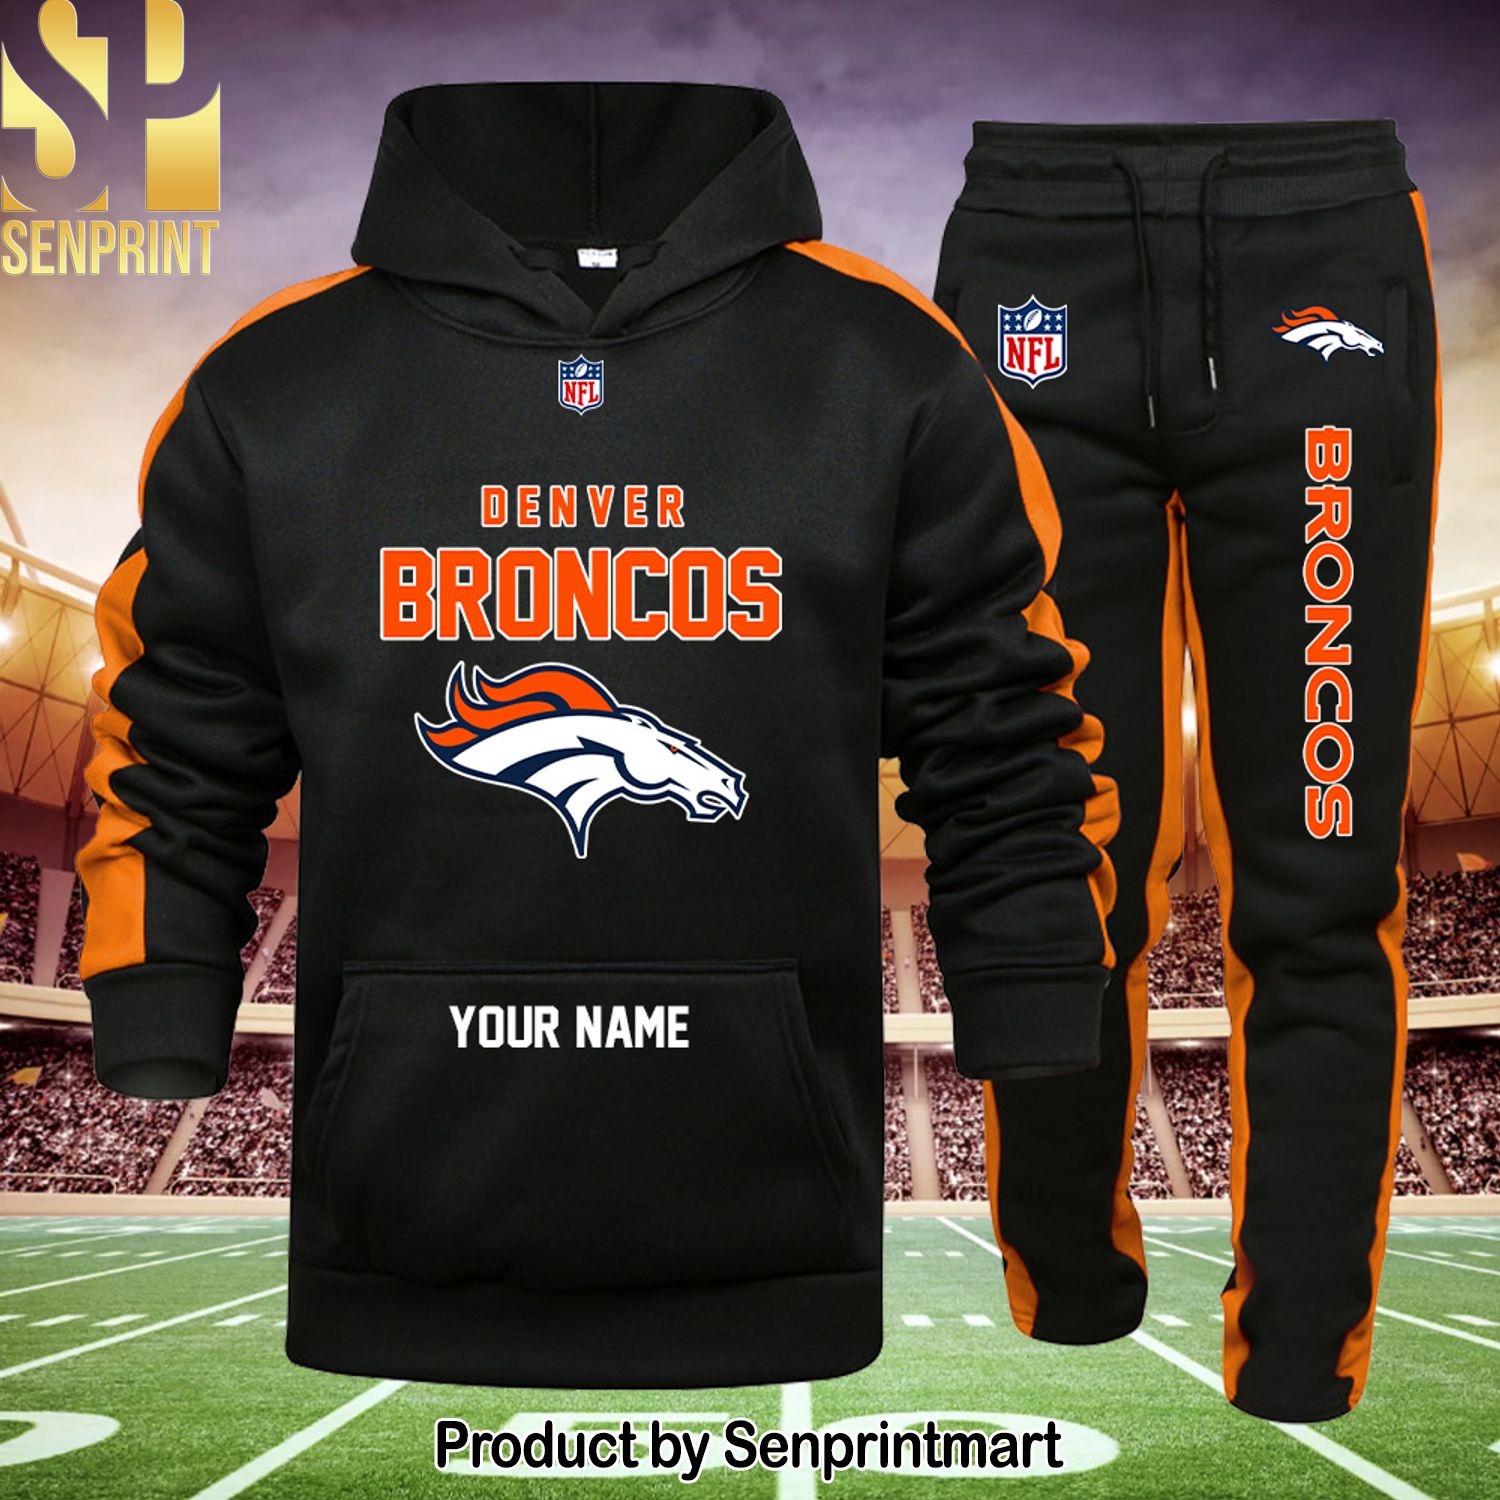 NFL Denver Broncos For Fans Shirt and Sweatpants